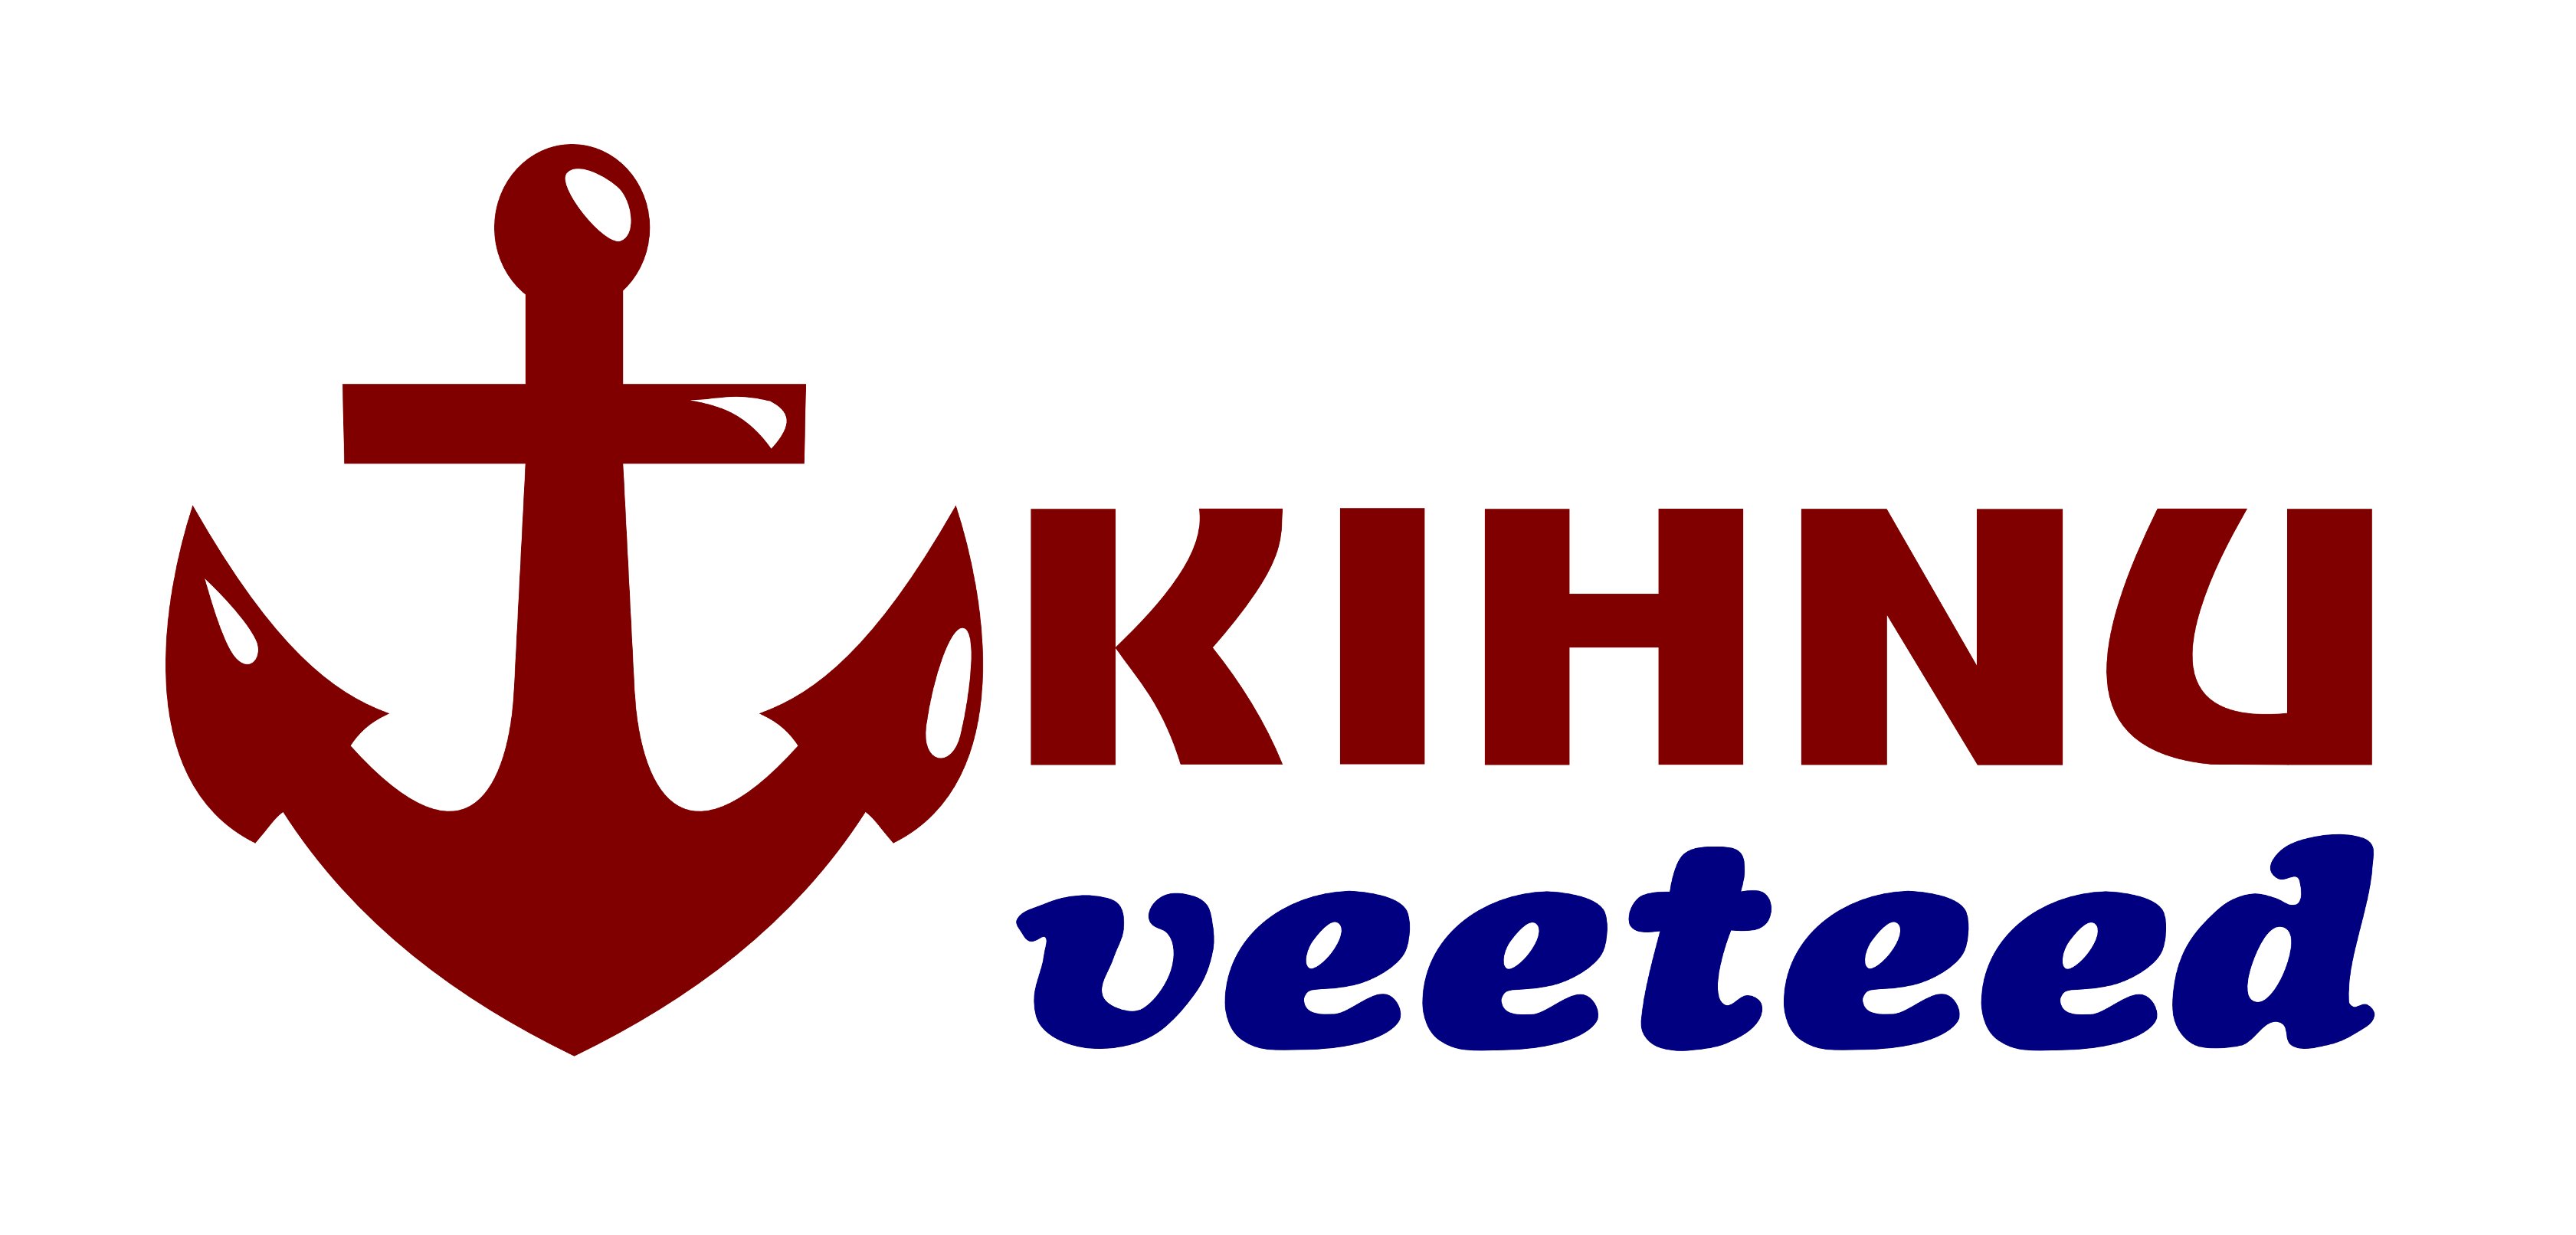 Kihnu Veeteed logo